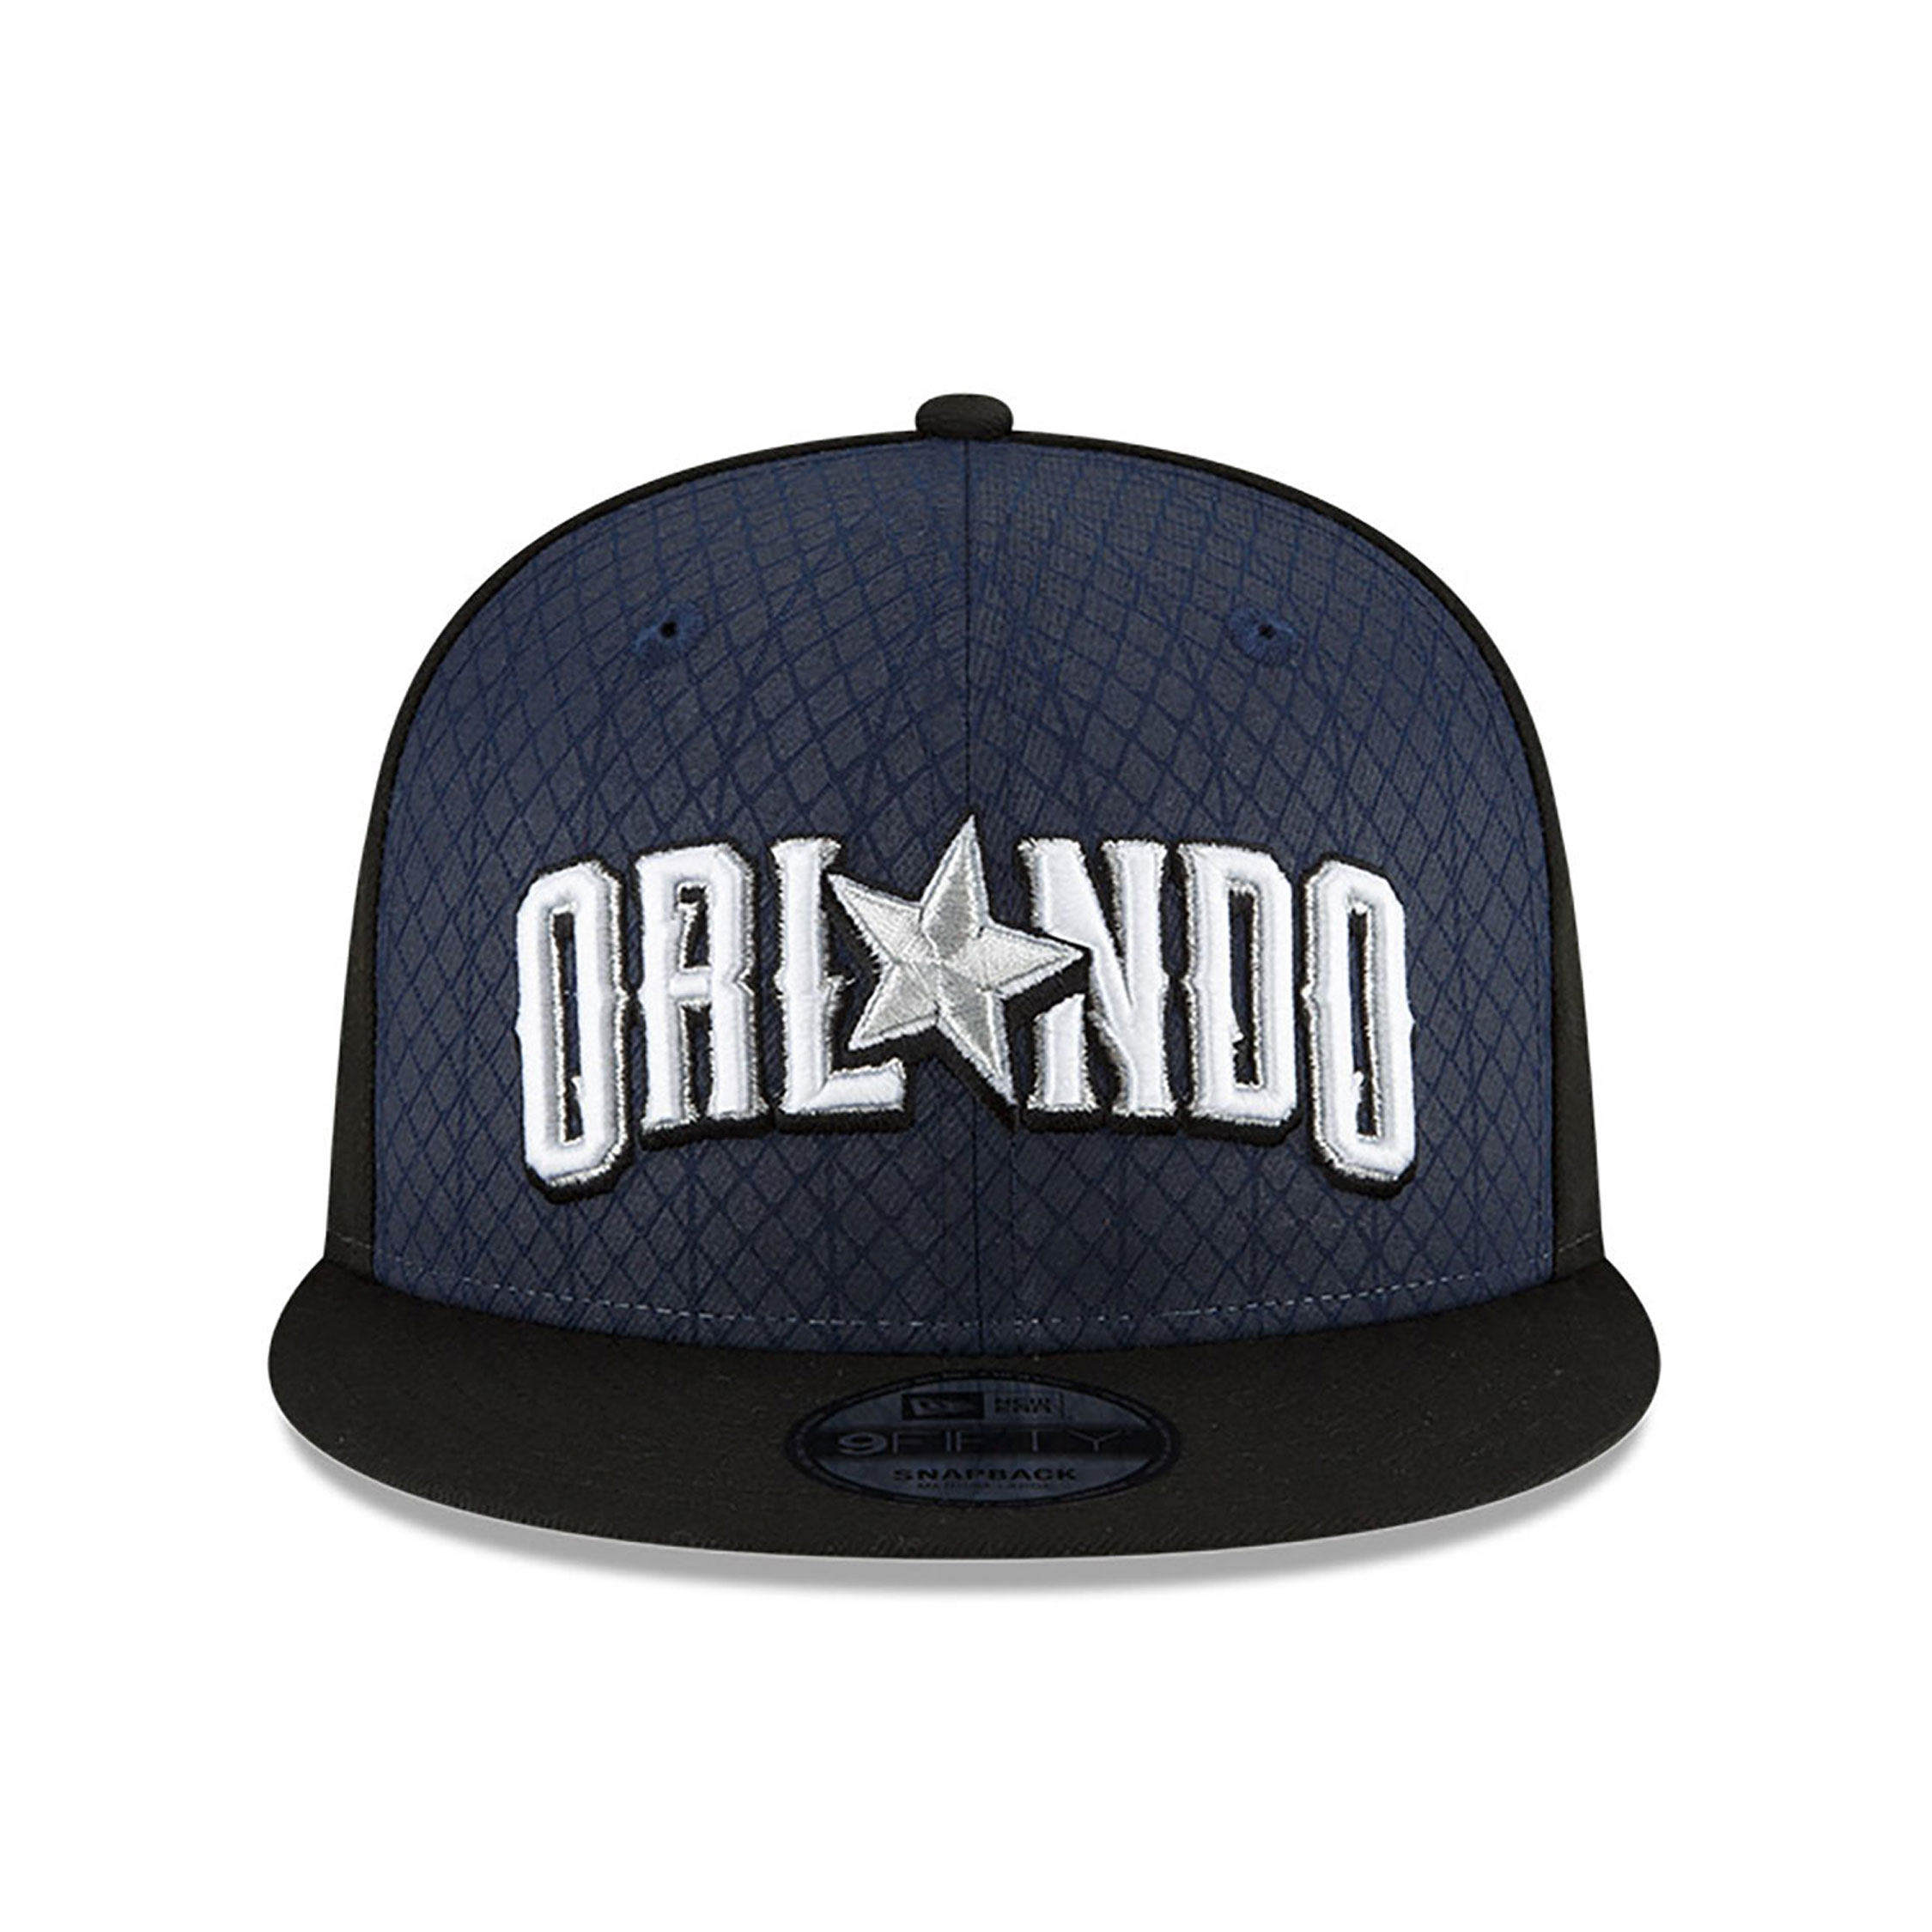 Orlando Magic NBA City Edition Navy 9FIFTY Snapback Cap